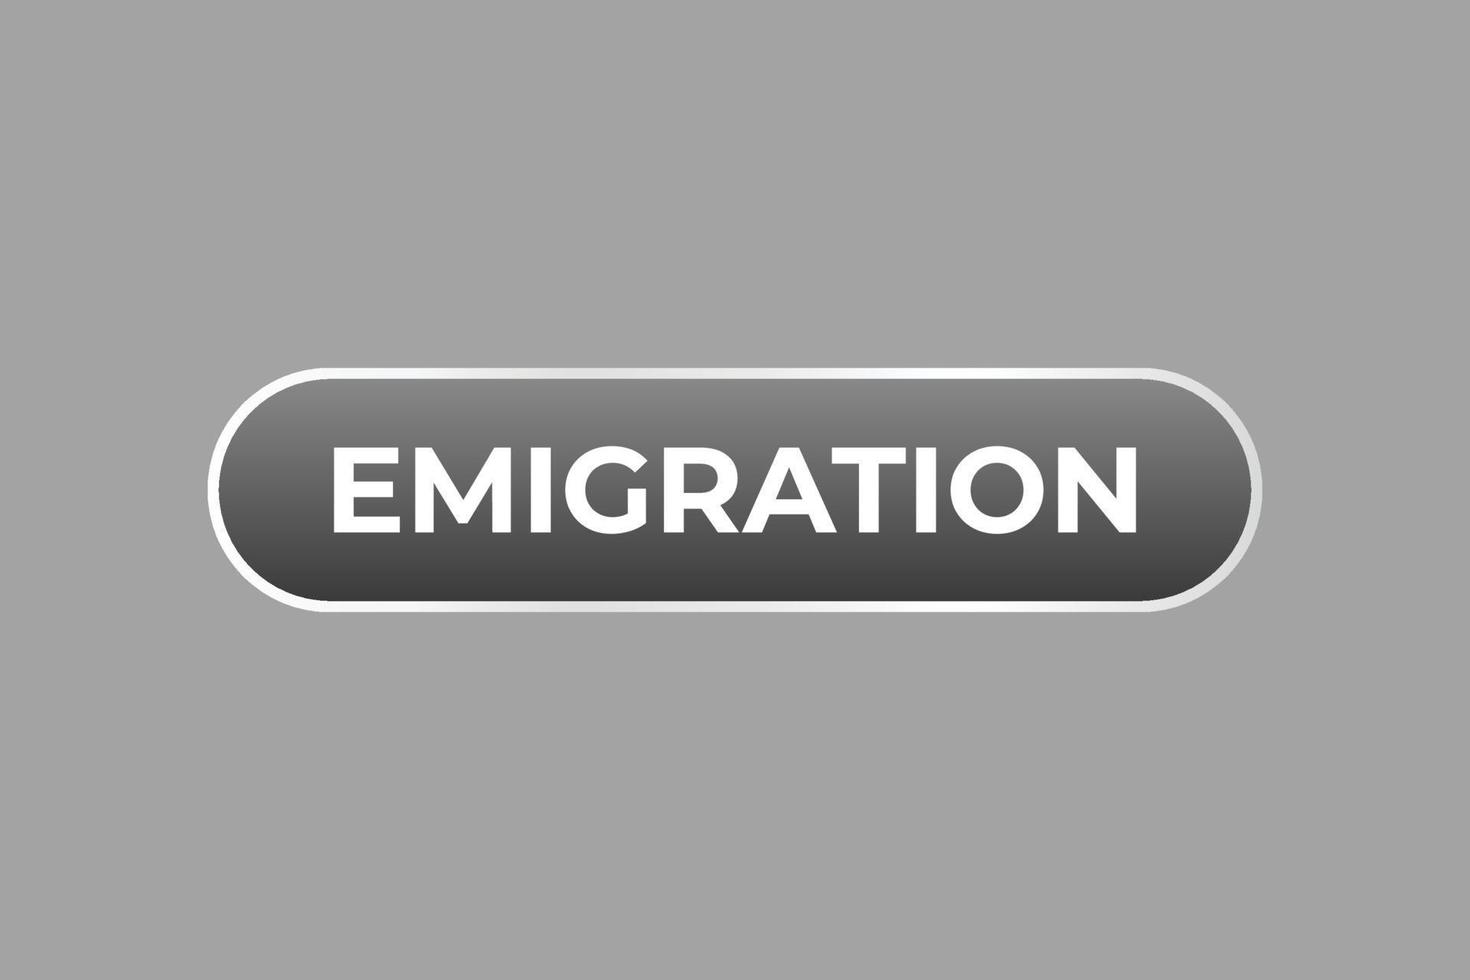 émigration bouton. discours bulle, bannière étiquette émigration vecteur